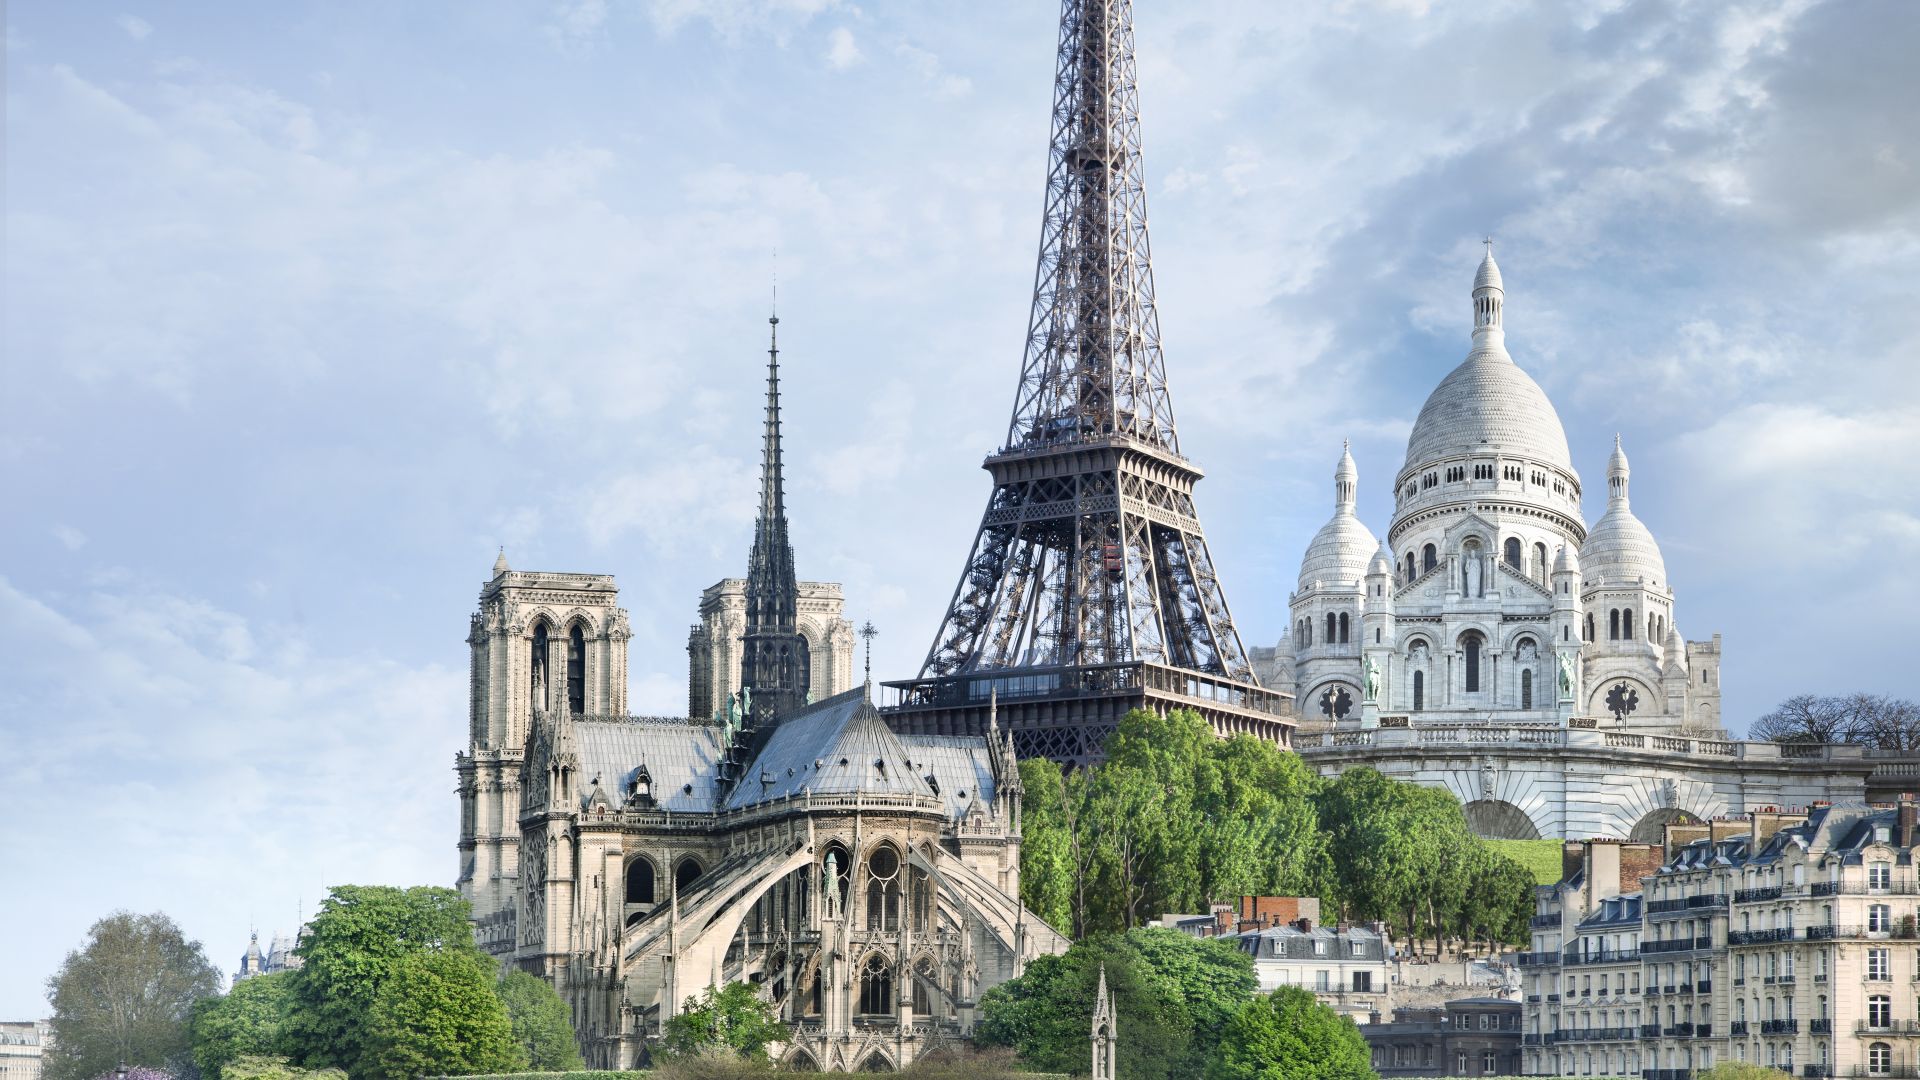 Paris, France, monuments, travel, tourism (horizontal)